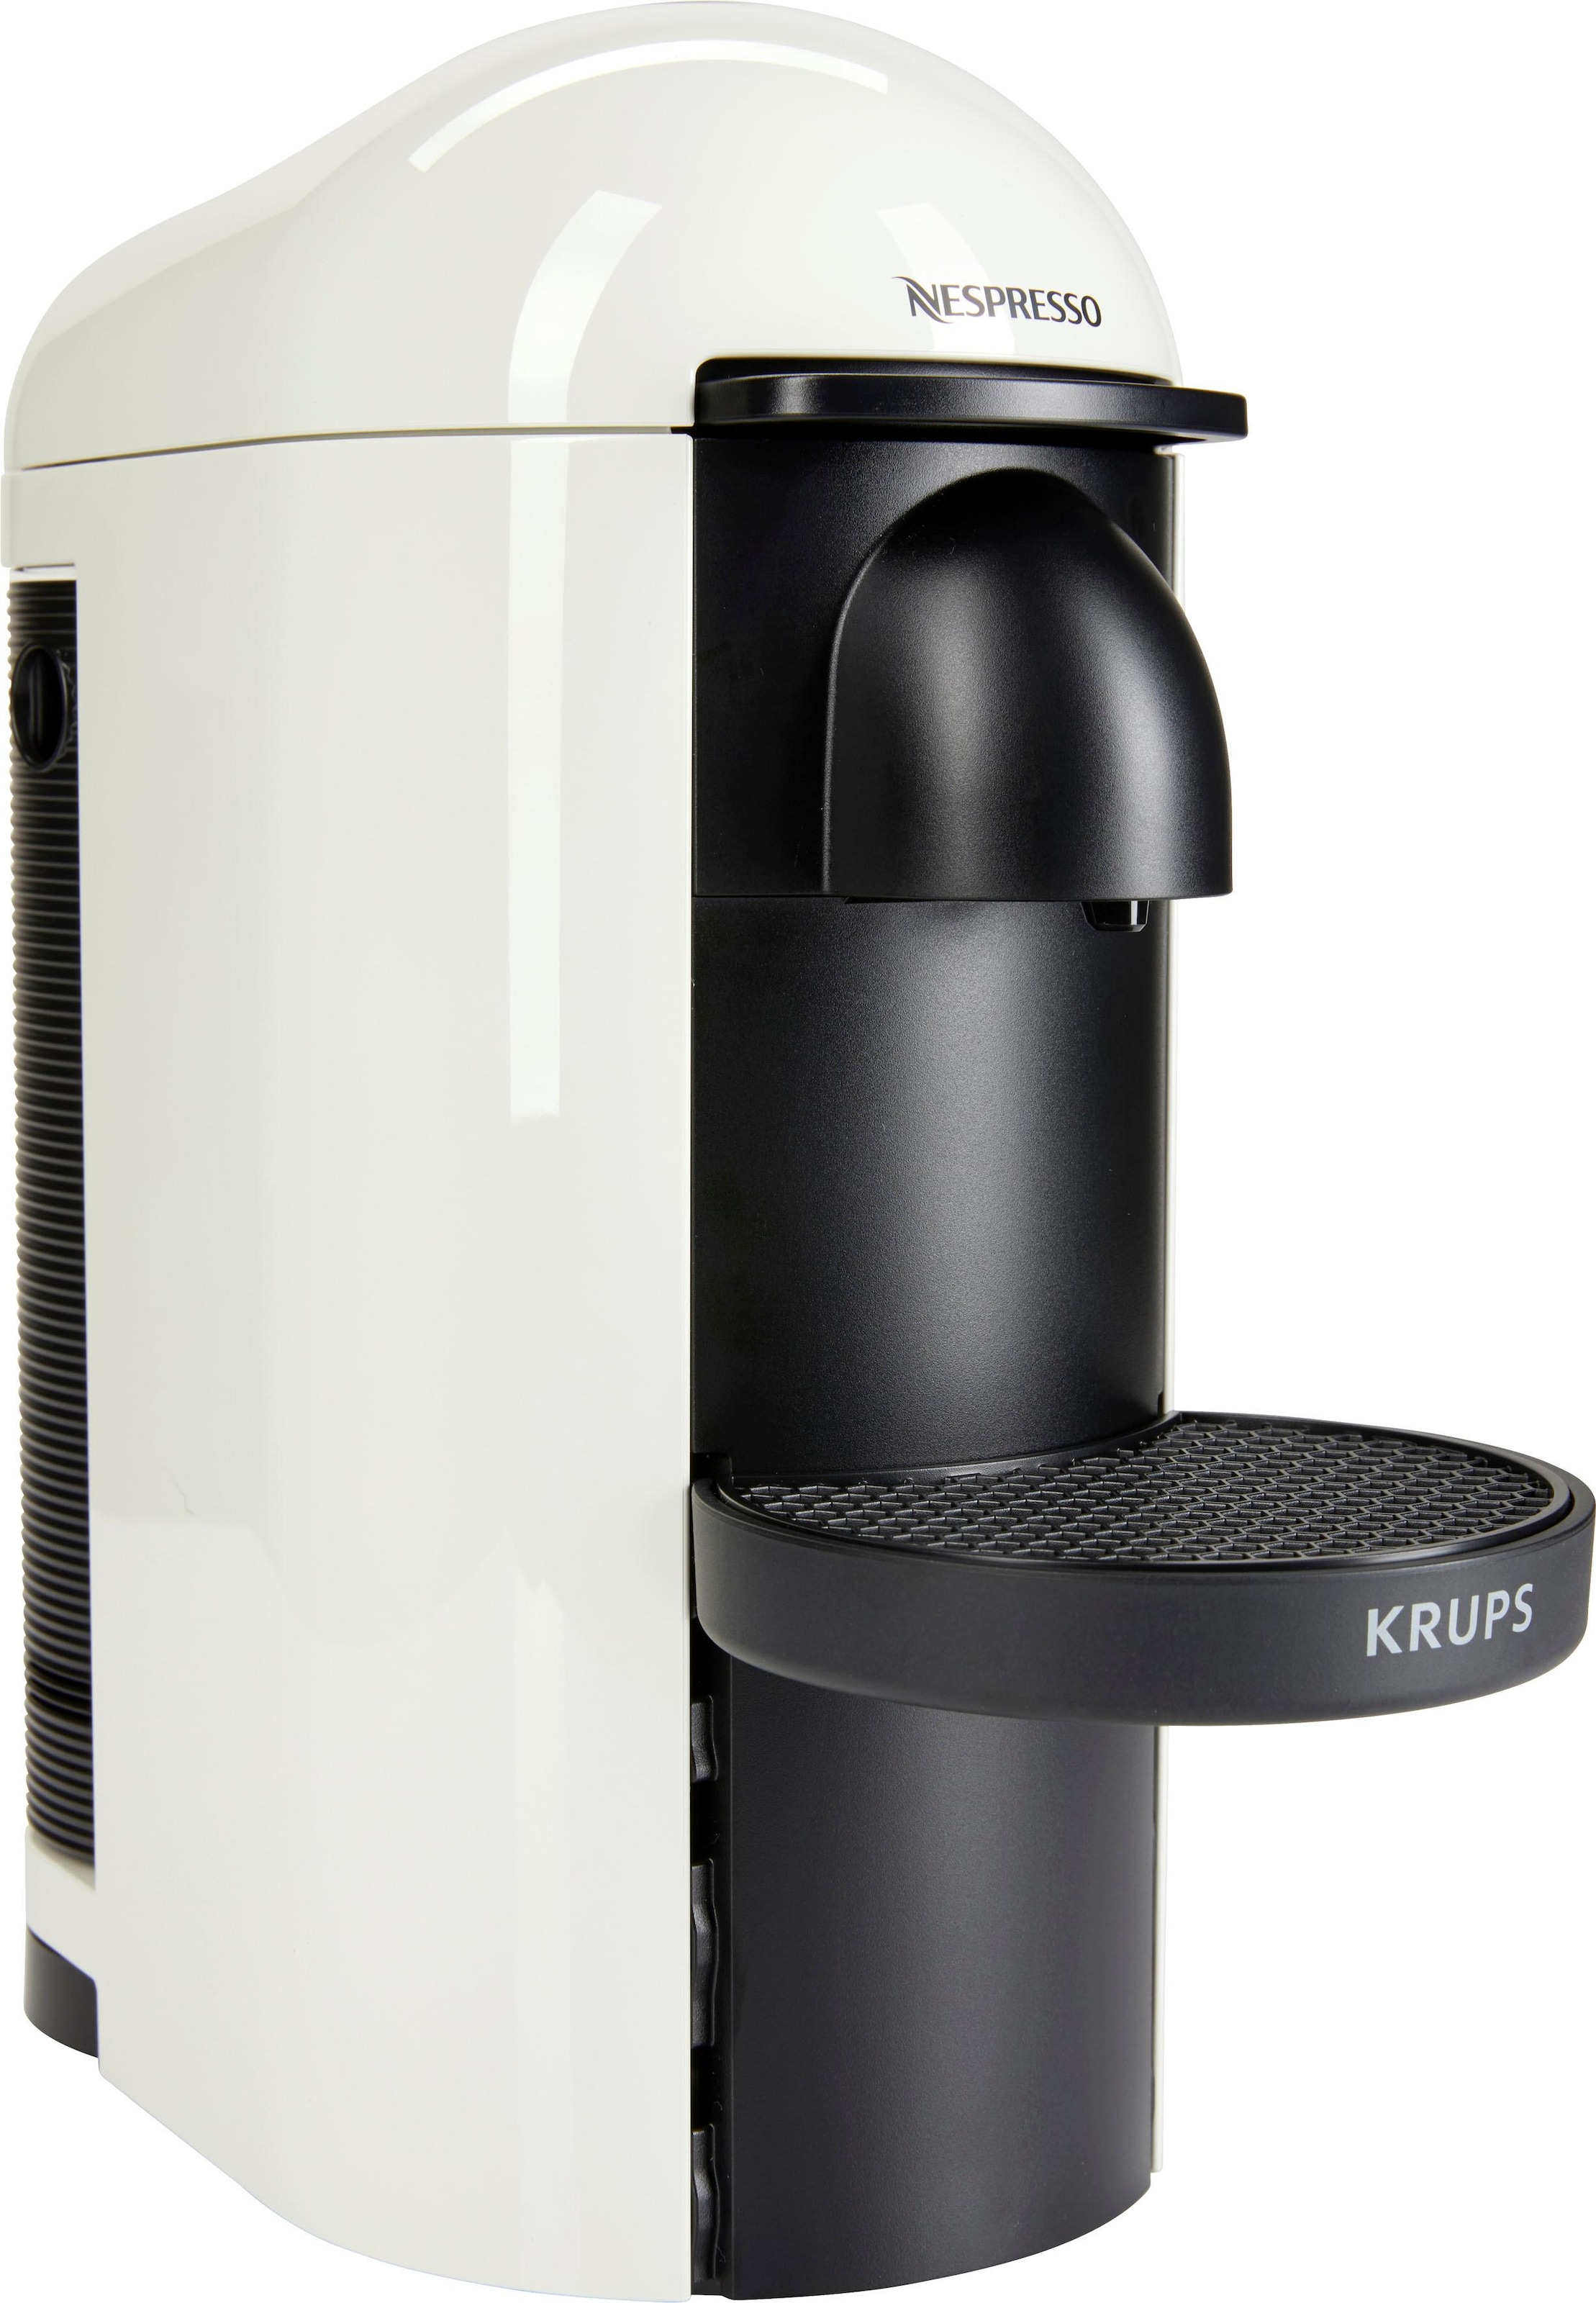 Plus Raten auf Vertuo XN9031 Kapselmaschine kaufen Nespresso